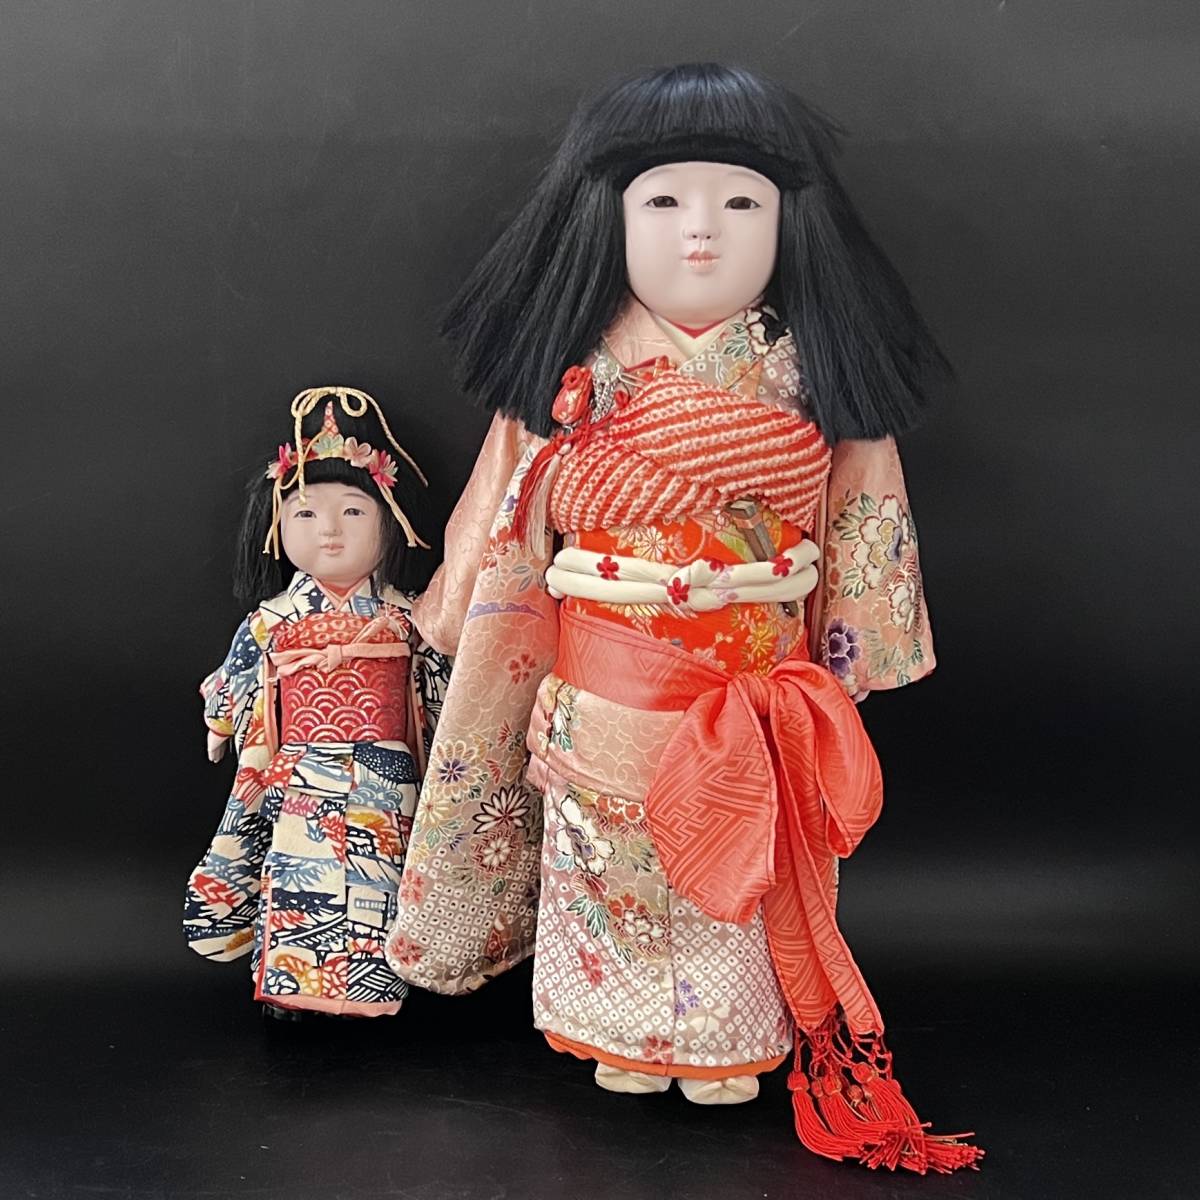 オンライン限定商品販壳 市松人形東光徳茂人毛正絹着物 おもちゃ/人形